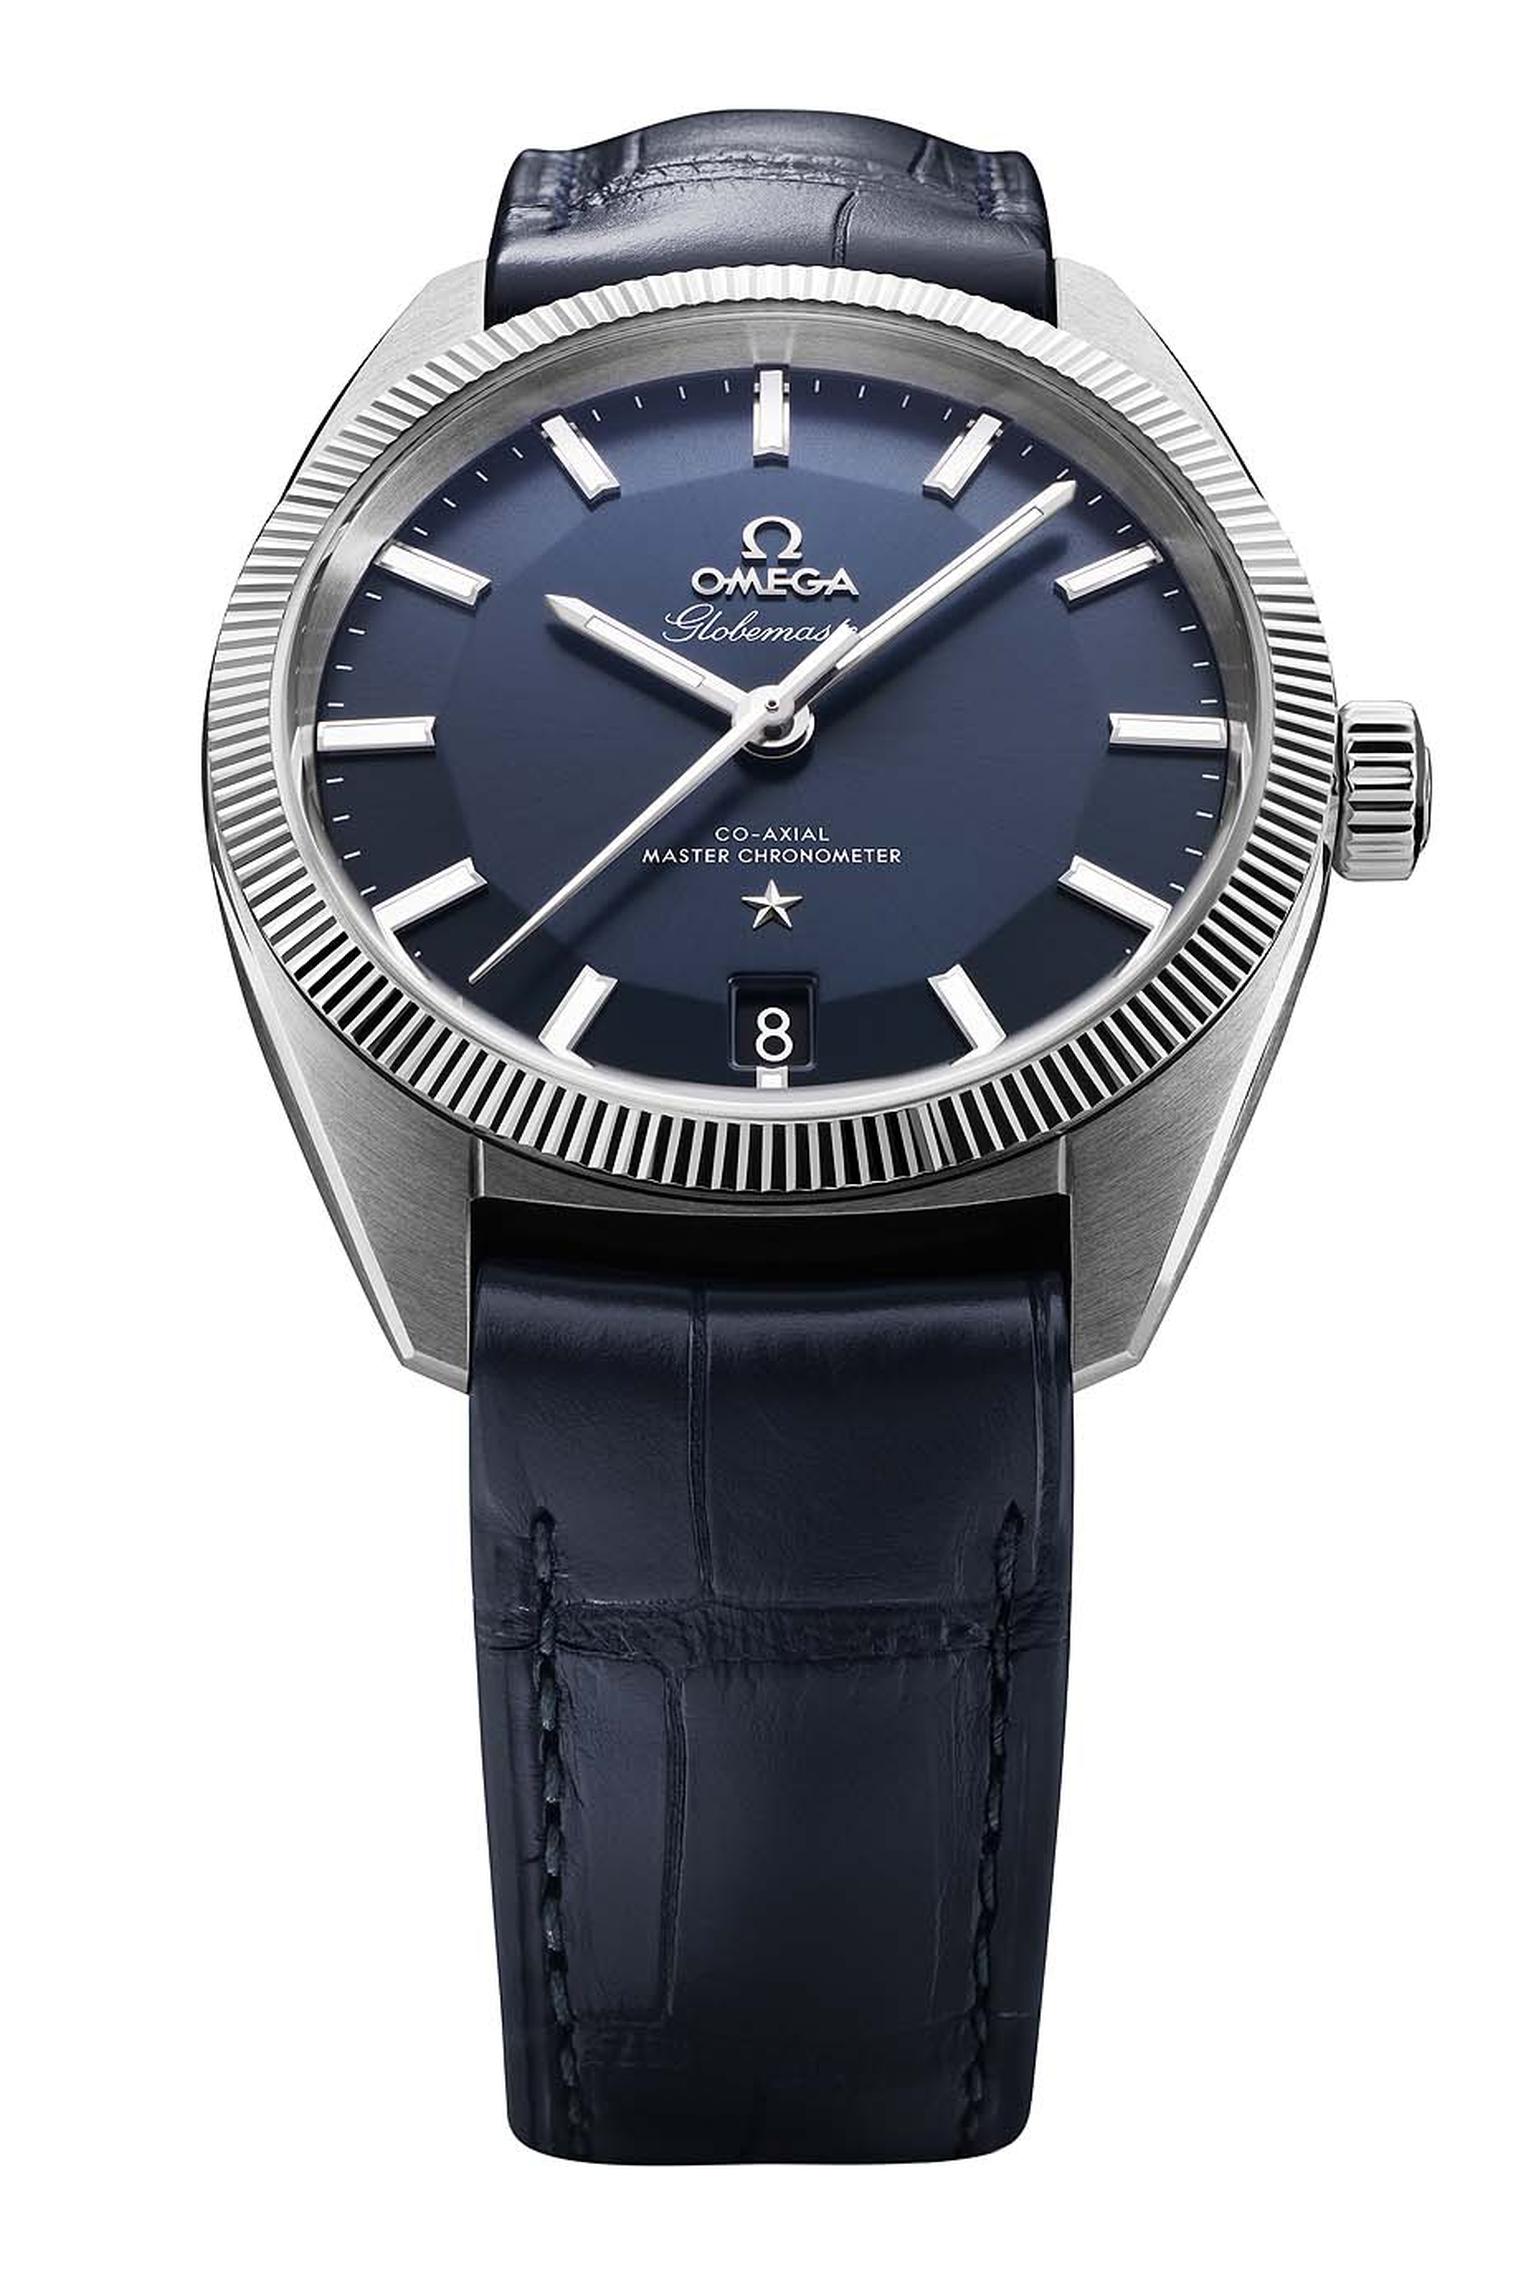 Basel Men's Watches_Vintage Omega Globemaster Master Chronomoter.jpg